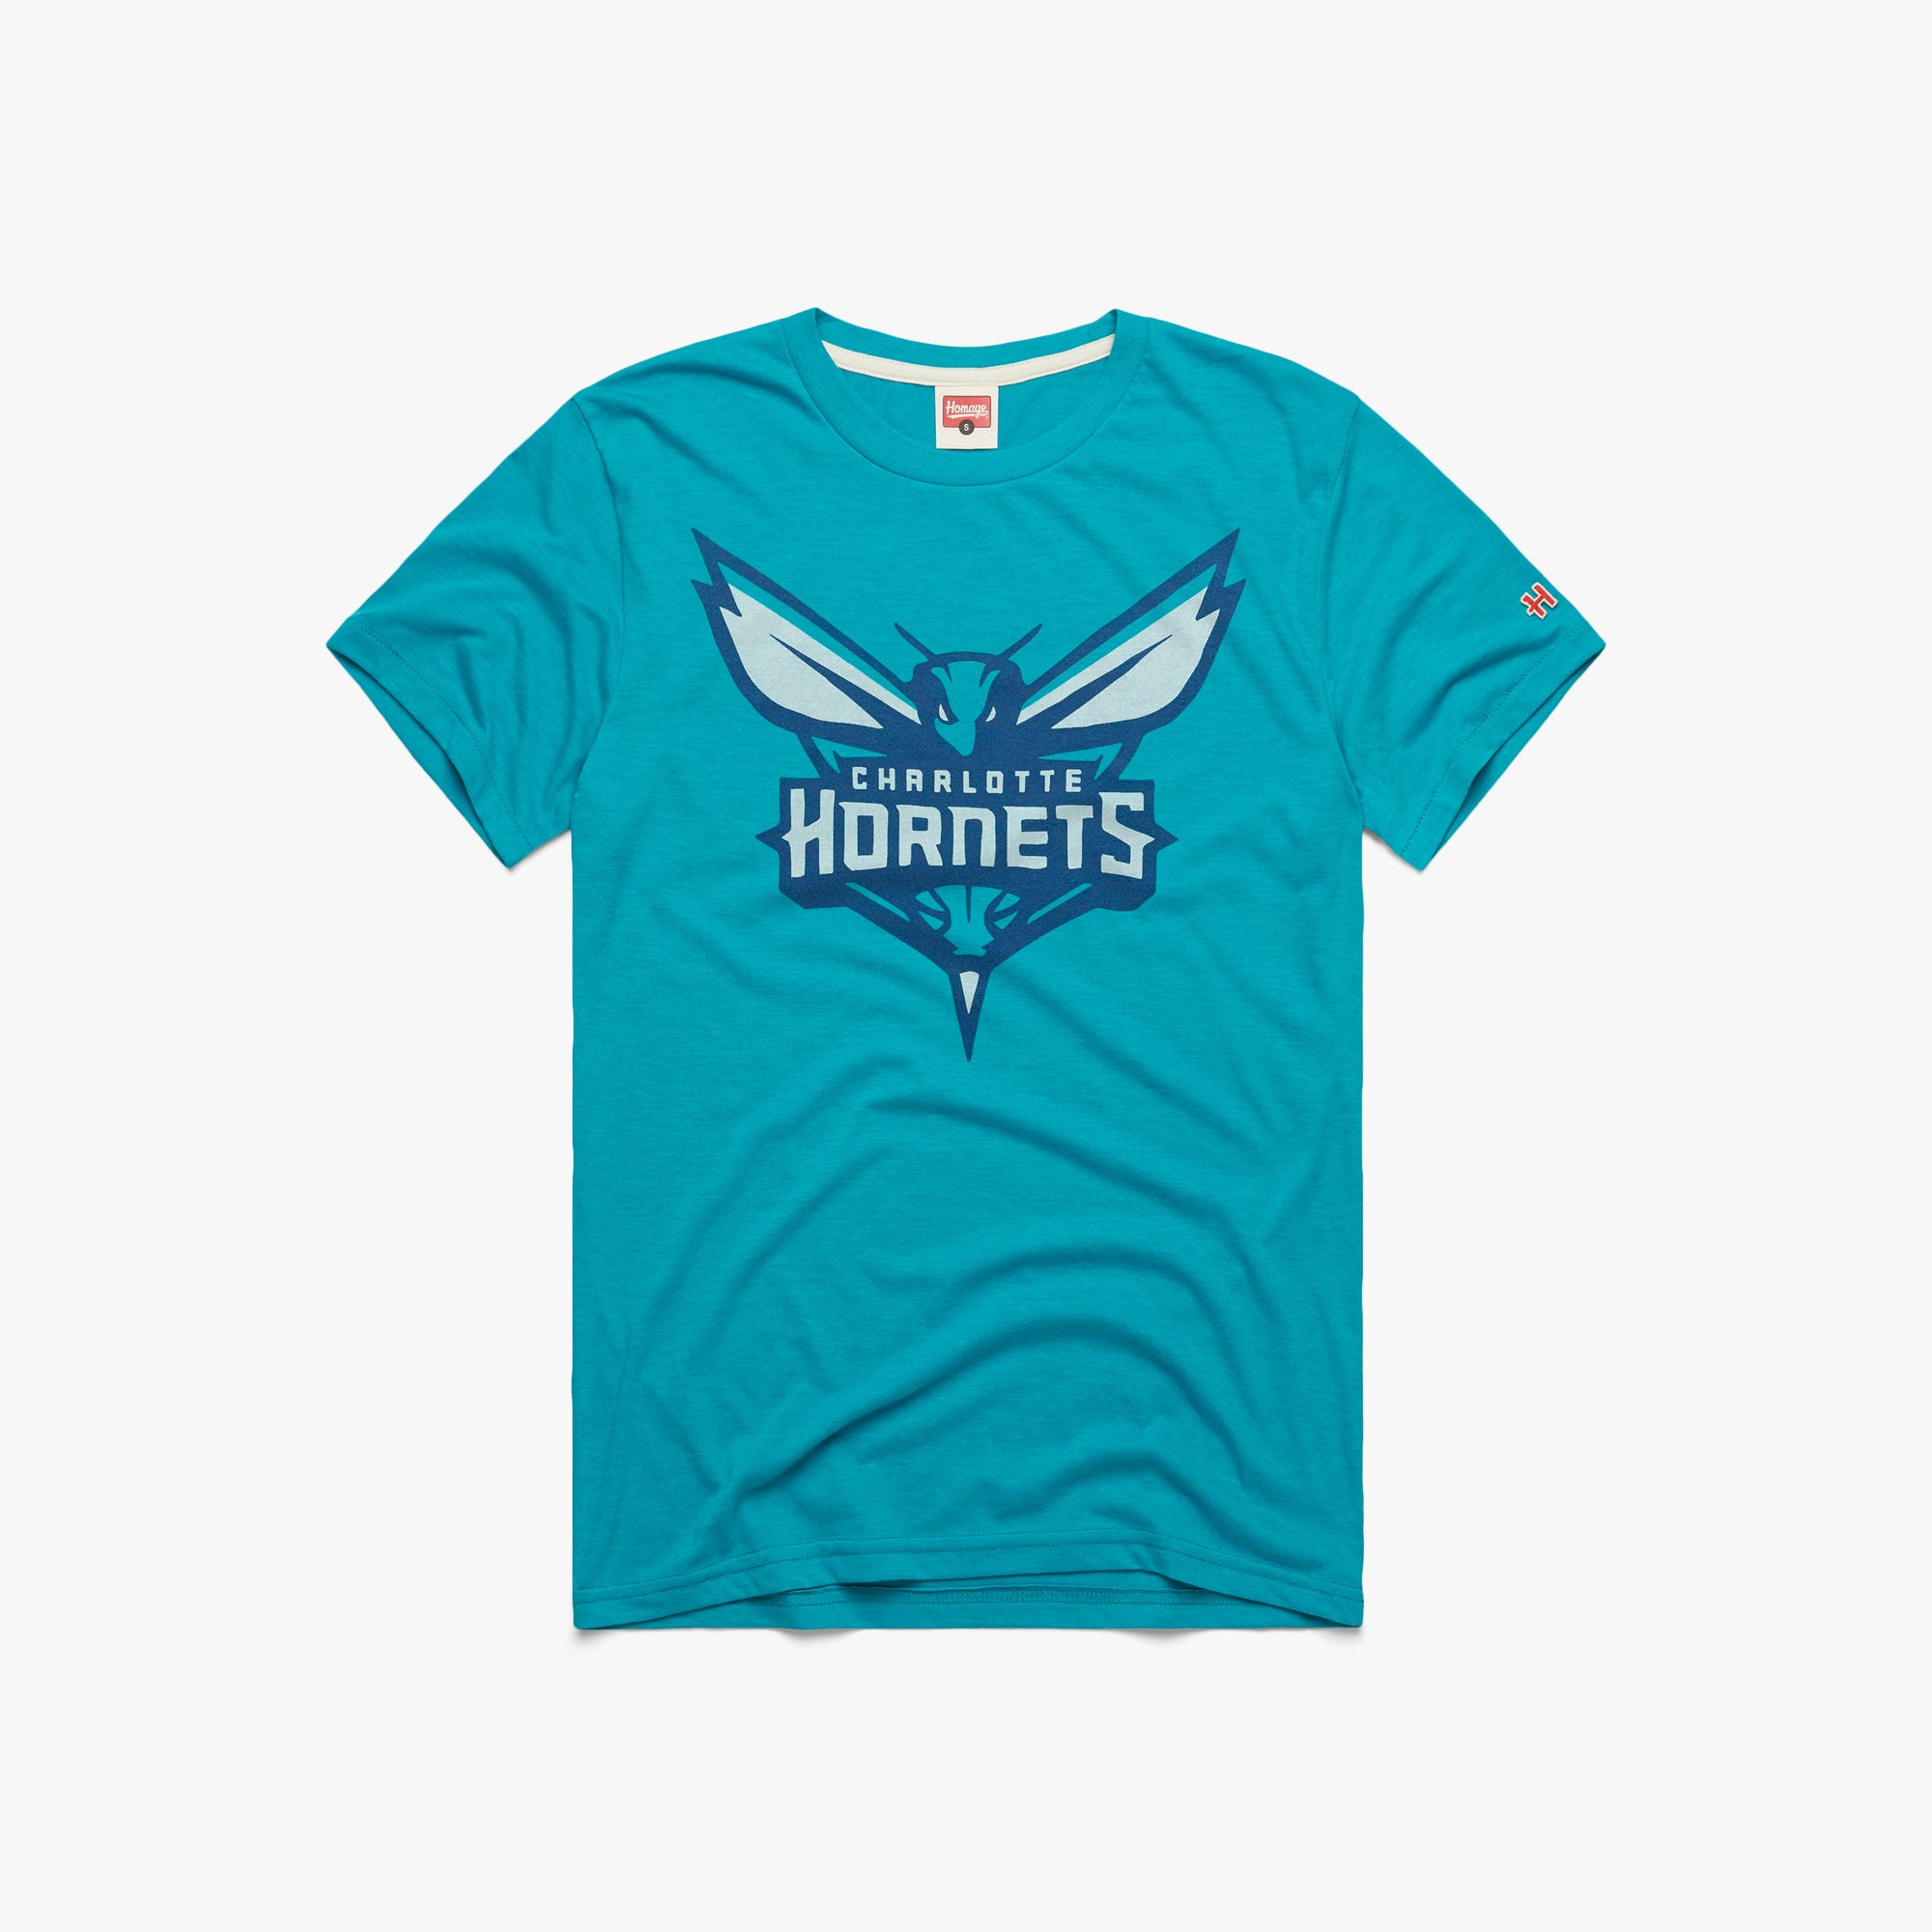  Hornets Shirt